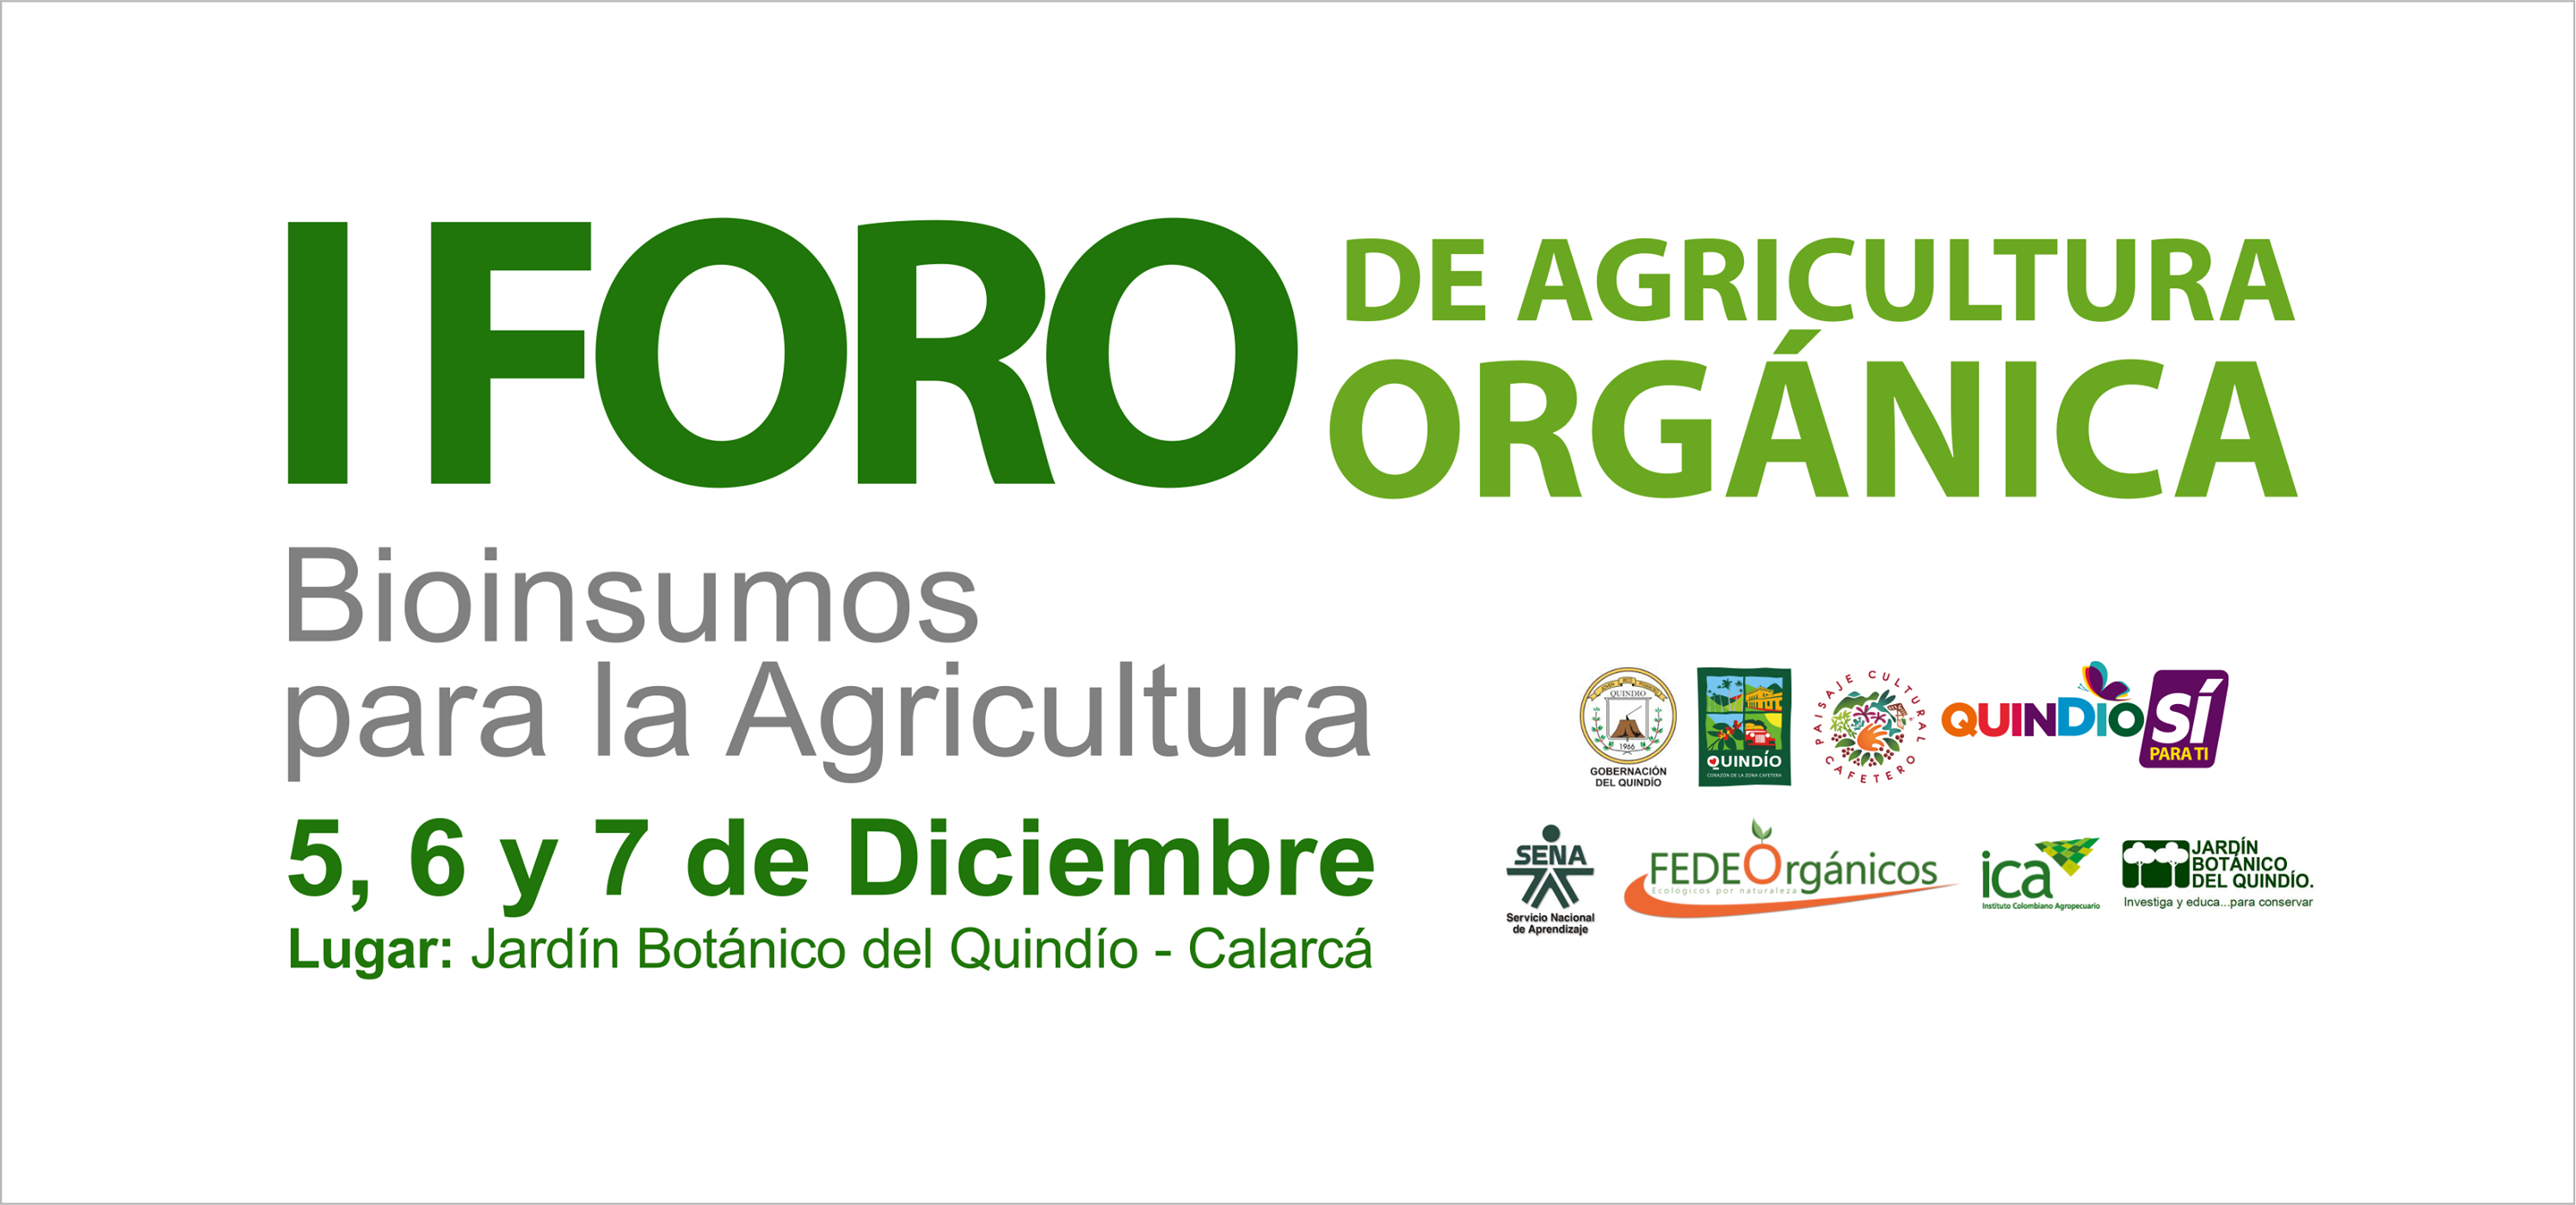 Gobernación del Quindío invita a agricultores y asociaciones agrícolas a participar del I Foro de Agricultura Orgánica